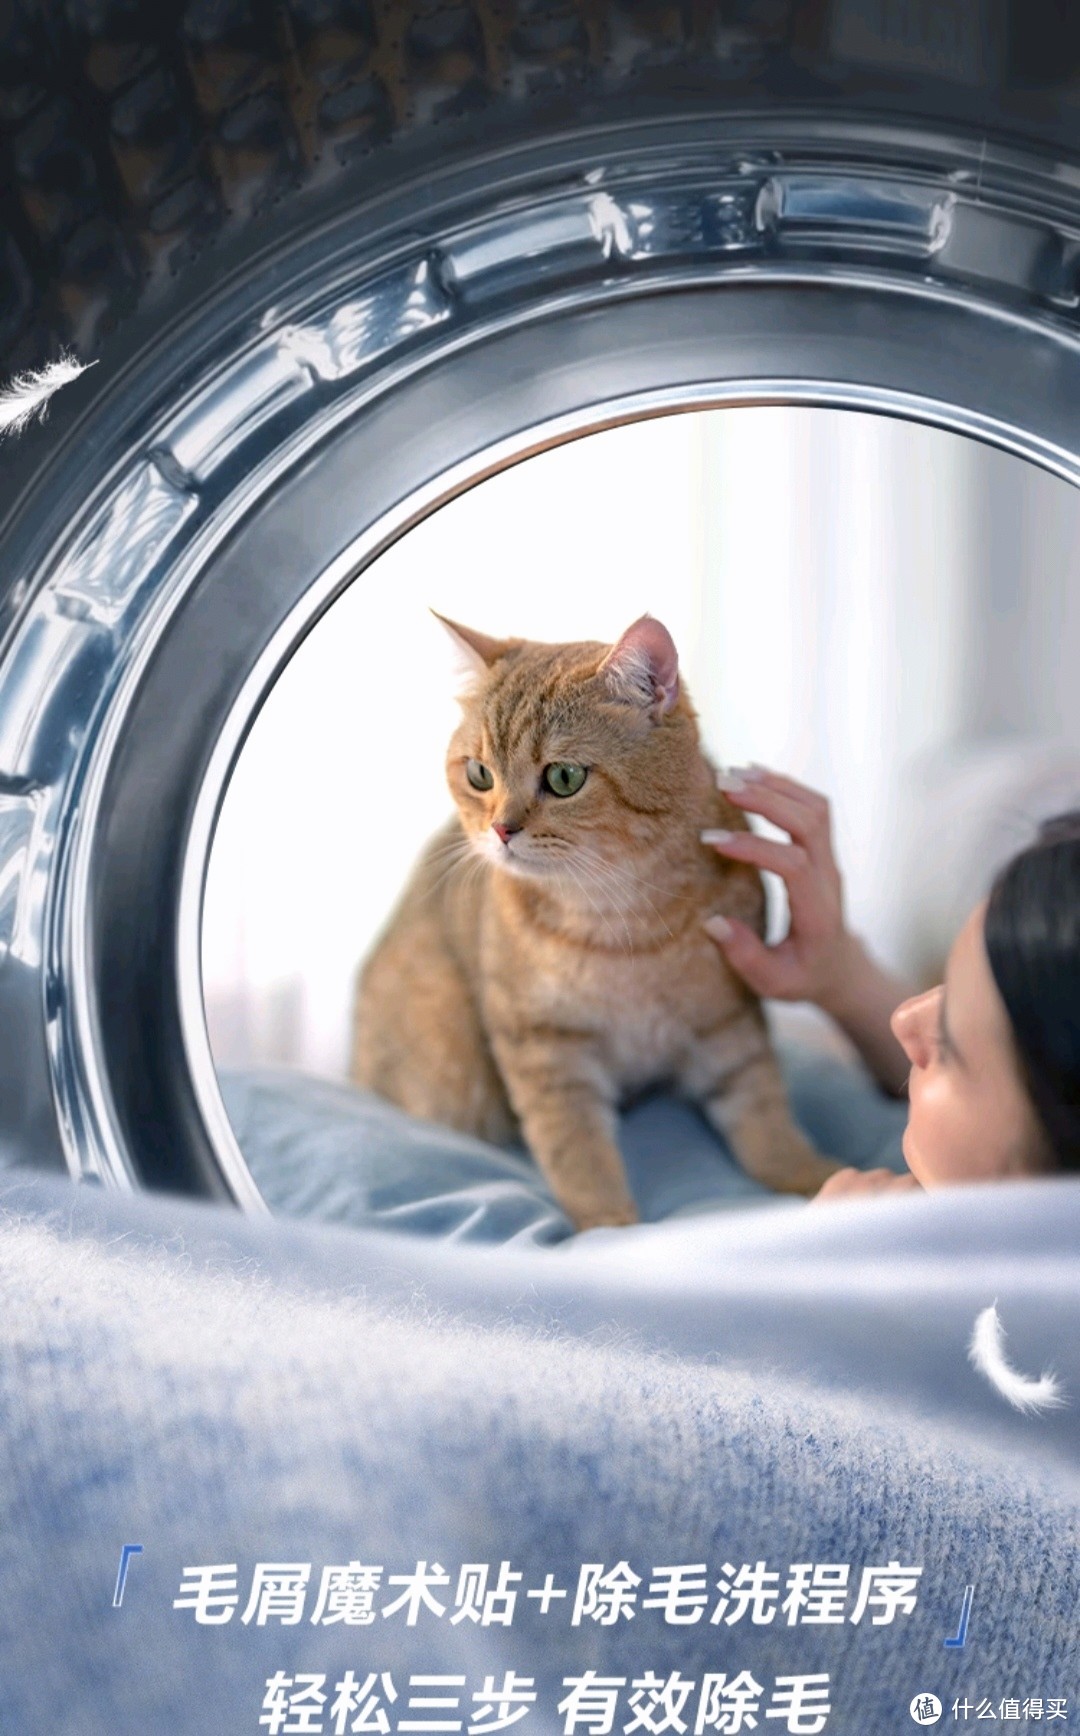 终于有一台滚筒洗衣机可以清洁猫毛了，618种草这台洗衣机。